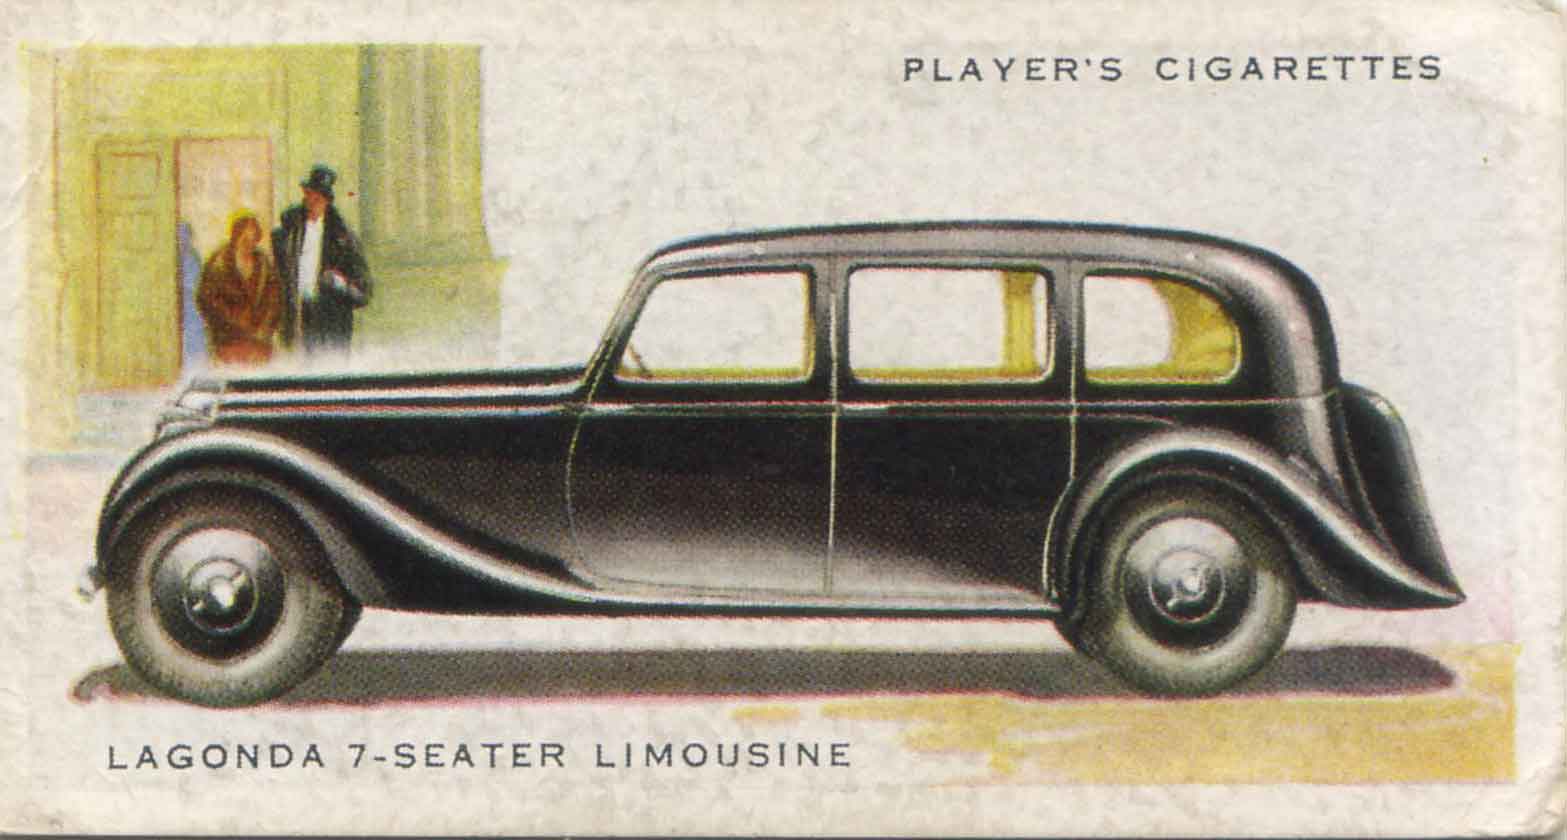 Lagonda 7 Seater. 1937 cigarette card.